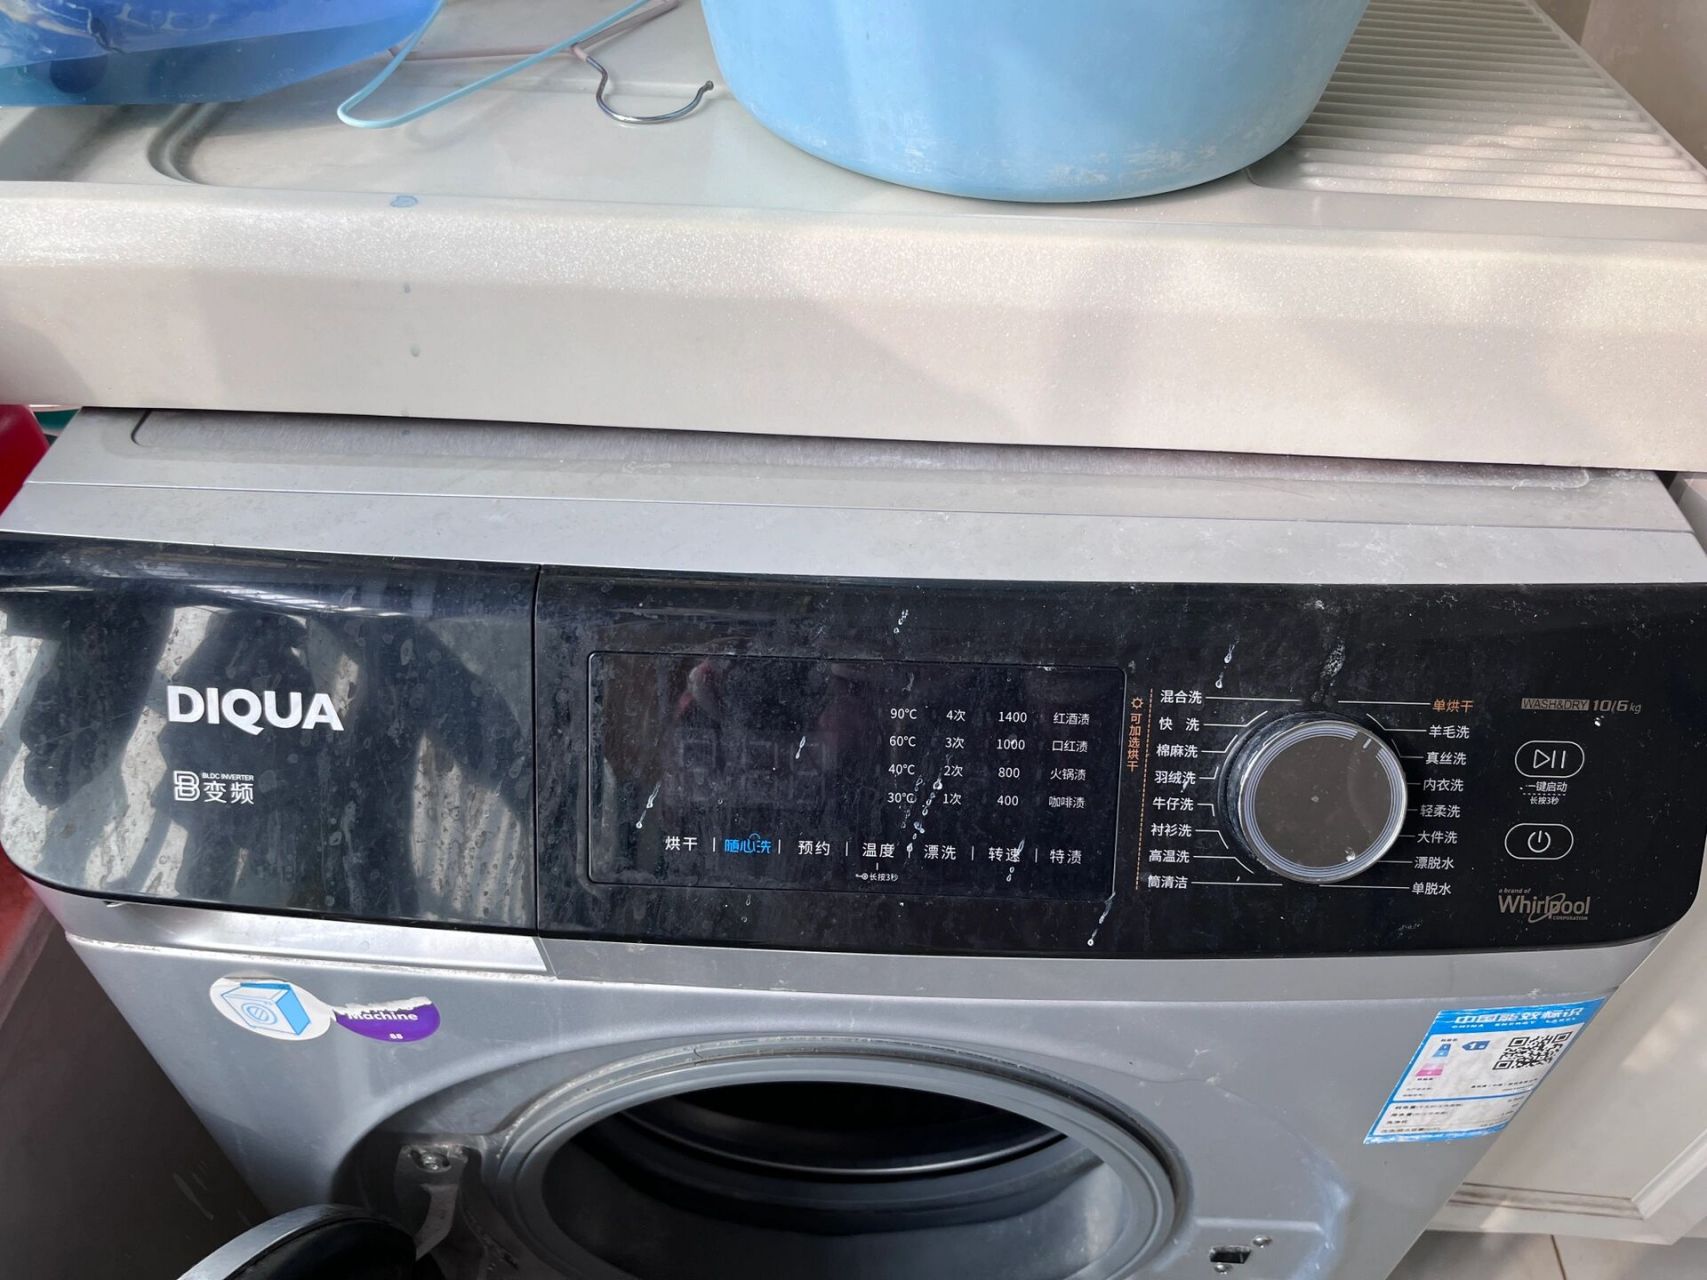 diqua洗衣机使用法图片